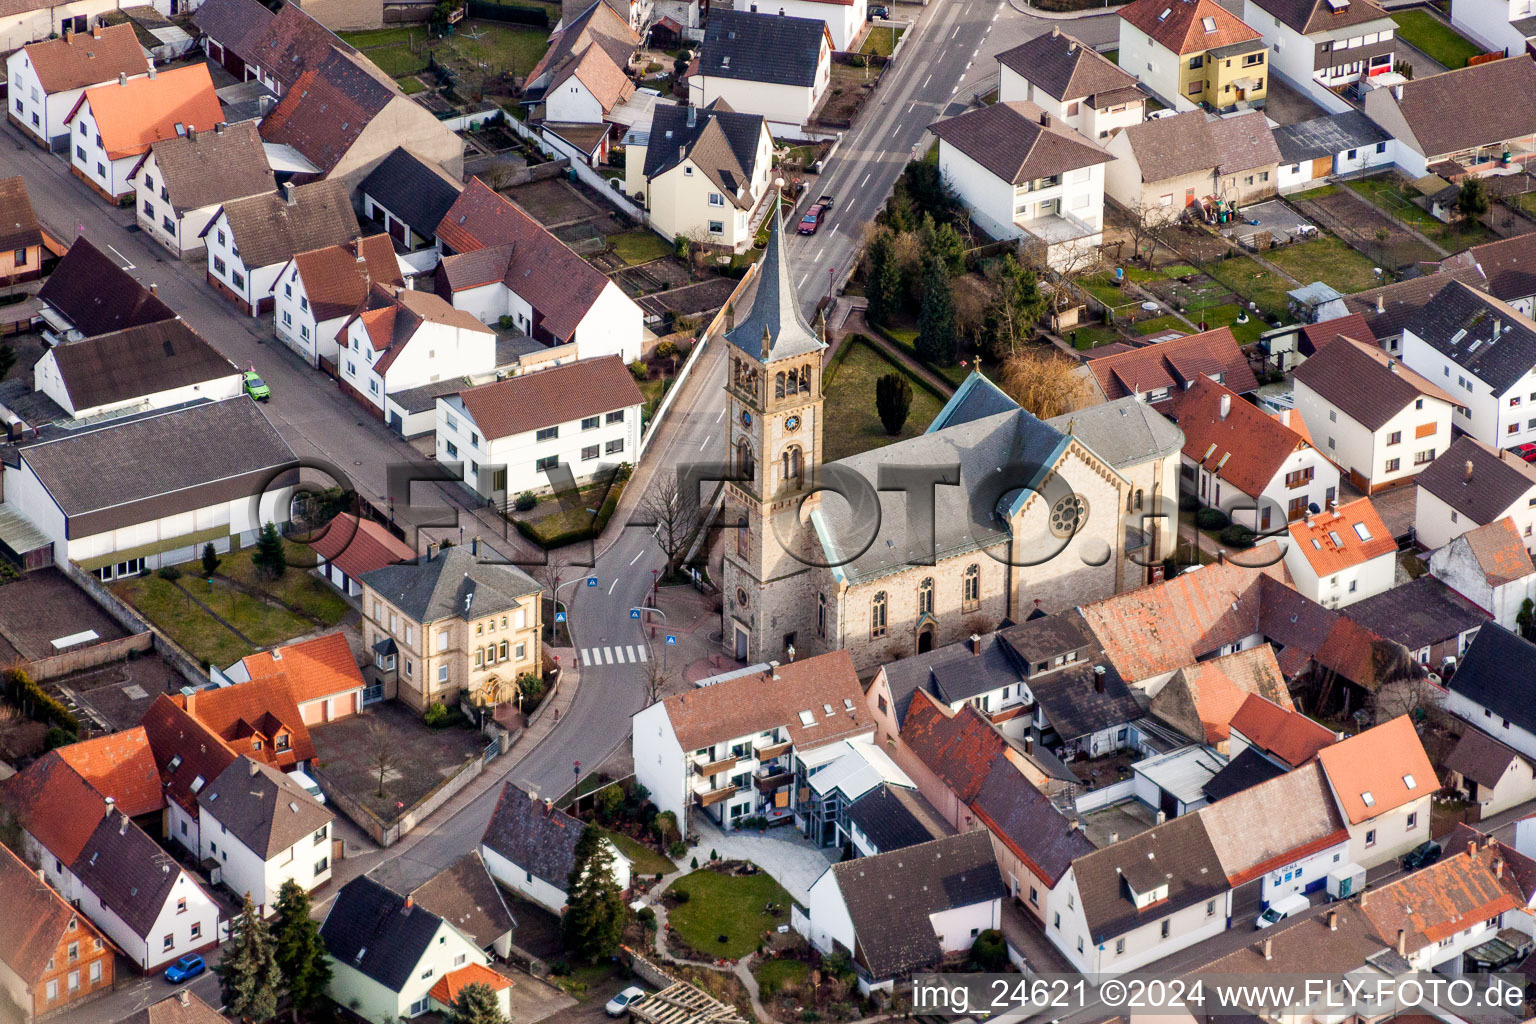 Vue aérienne de Bâtiment d'église au centre du village à le quartier Neuthard in Karlsdorf-Neuthard dans le département Bade-Wurtemberg, Allemagne